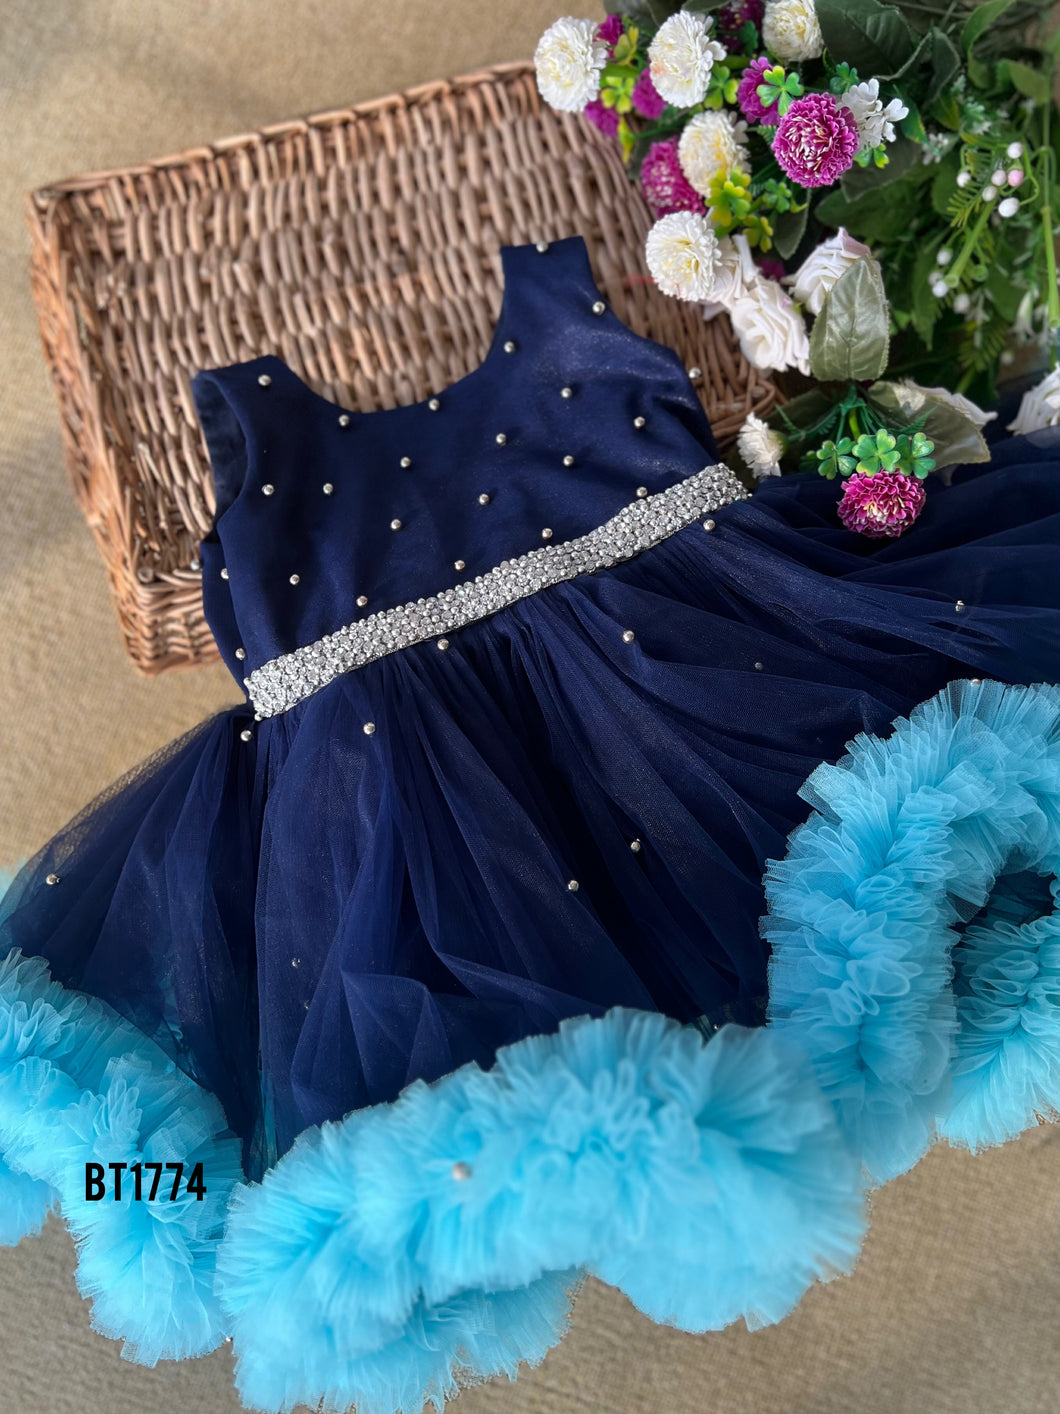 BT1774 Midnight Starlight Tulle Dress